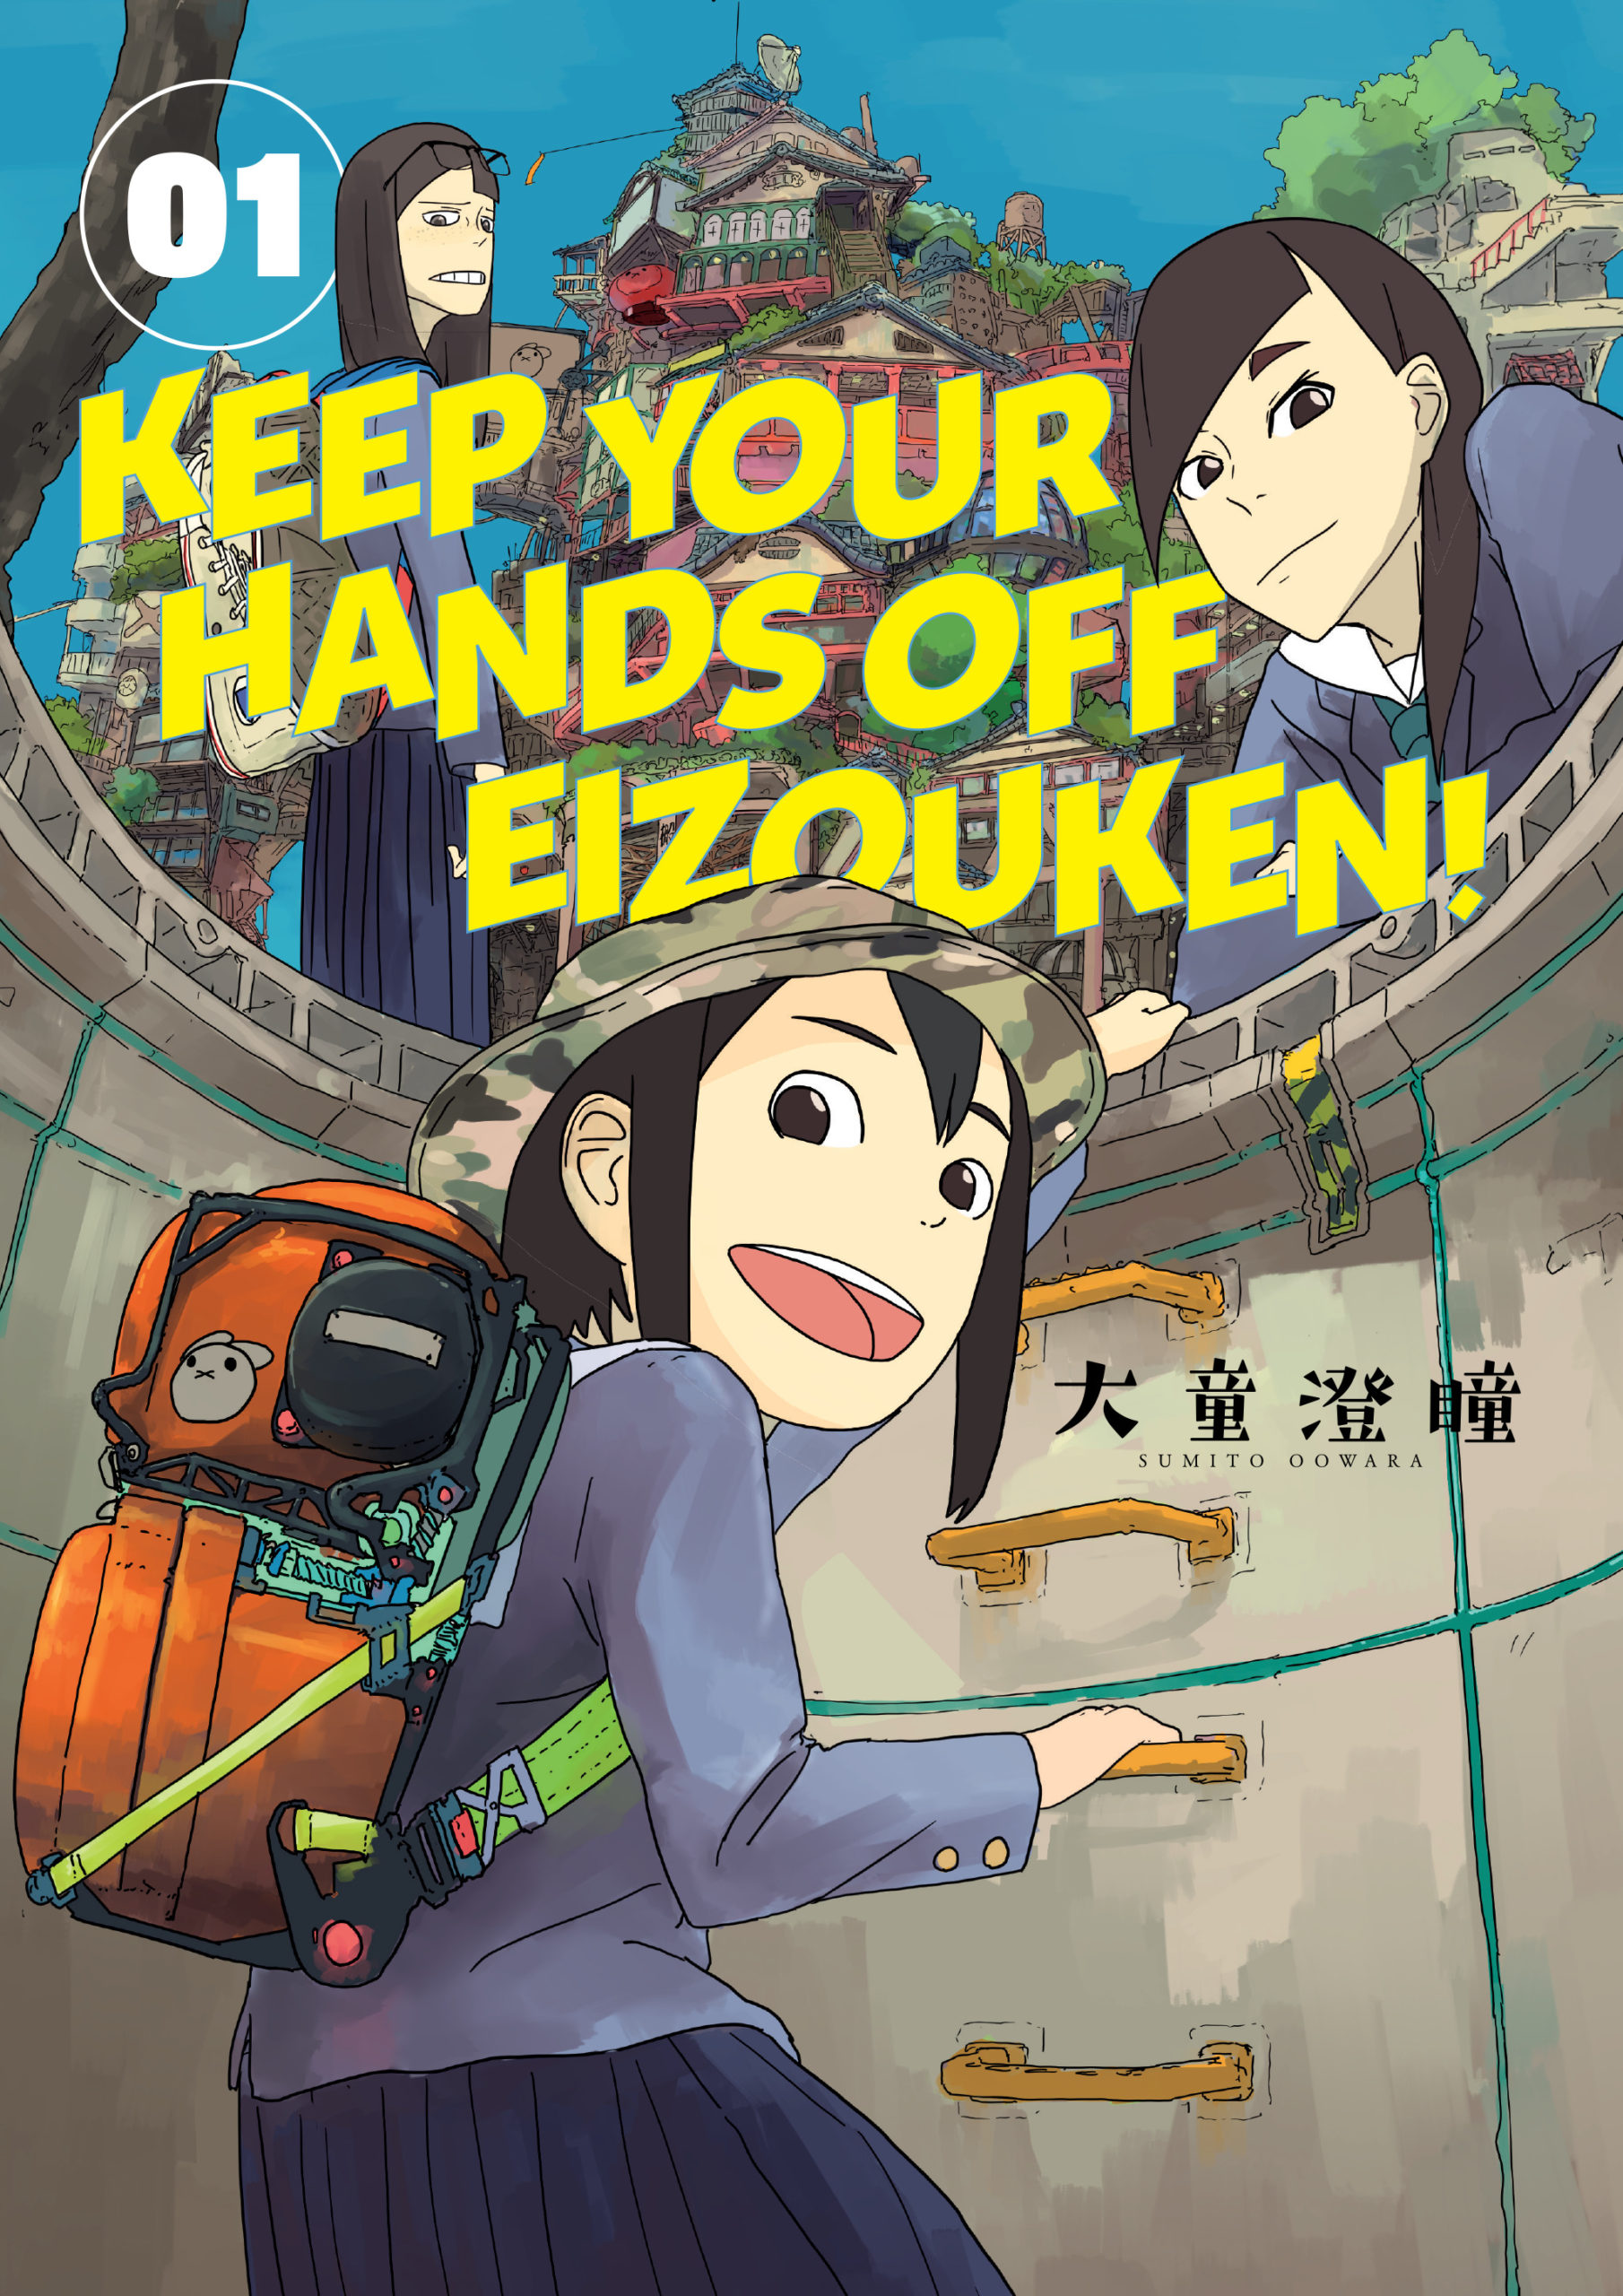 keep your hands off eizouken art